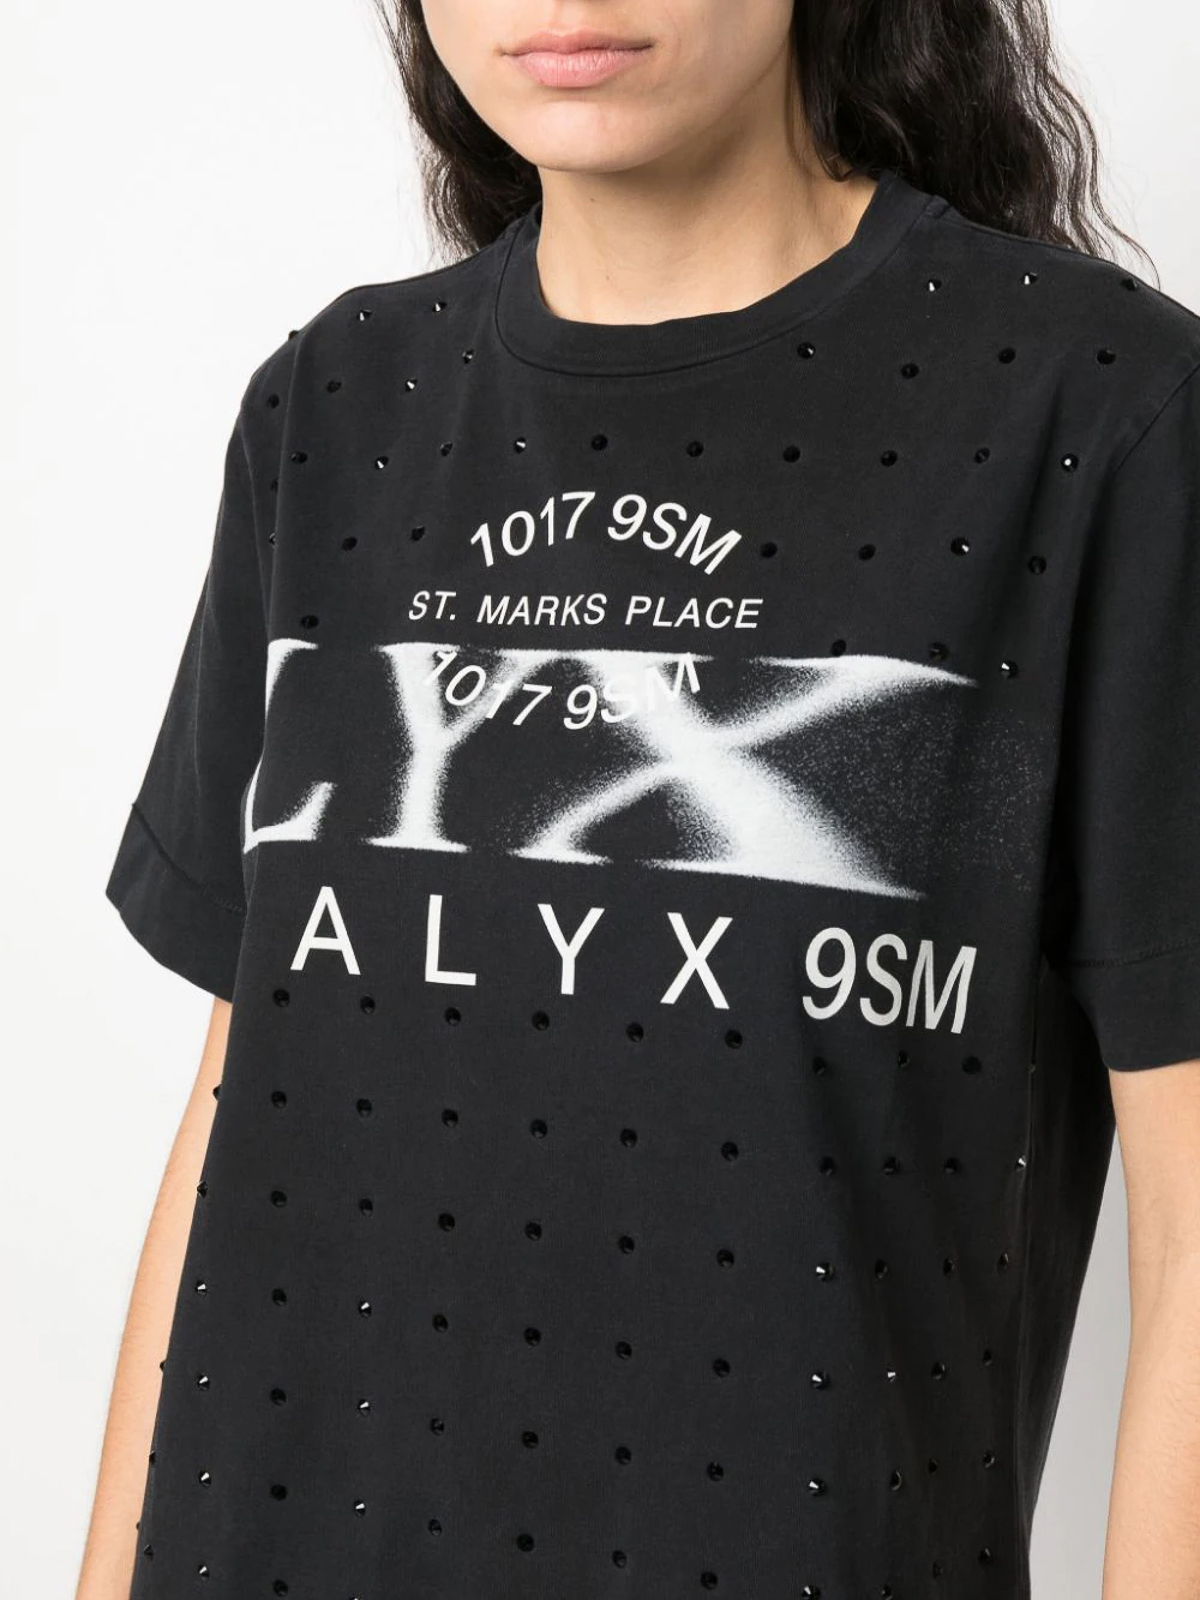 Tシャツ 1017 Alyx 9sm - Tシャツ - 黒 - AAUTS0399FA01BLK0003